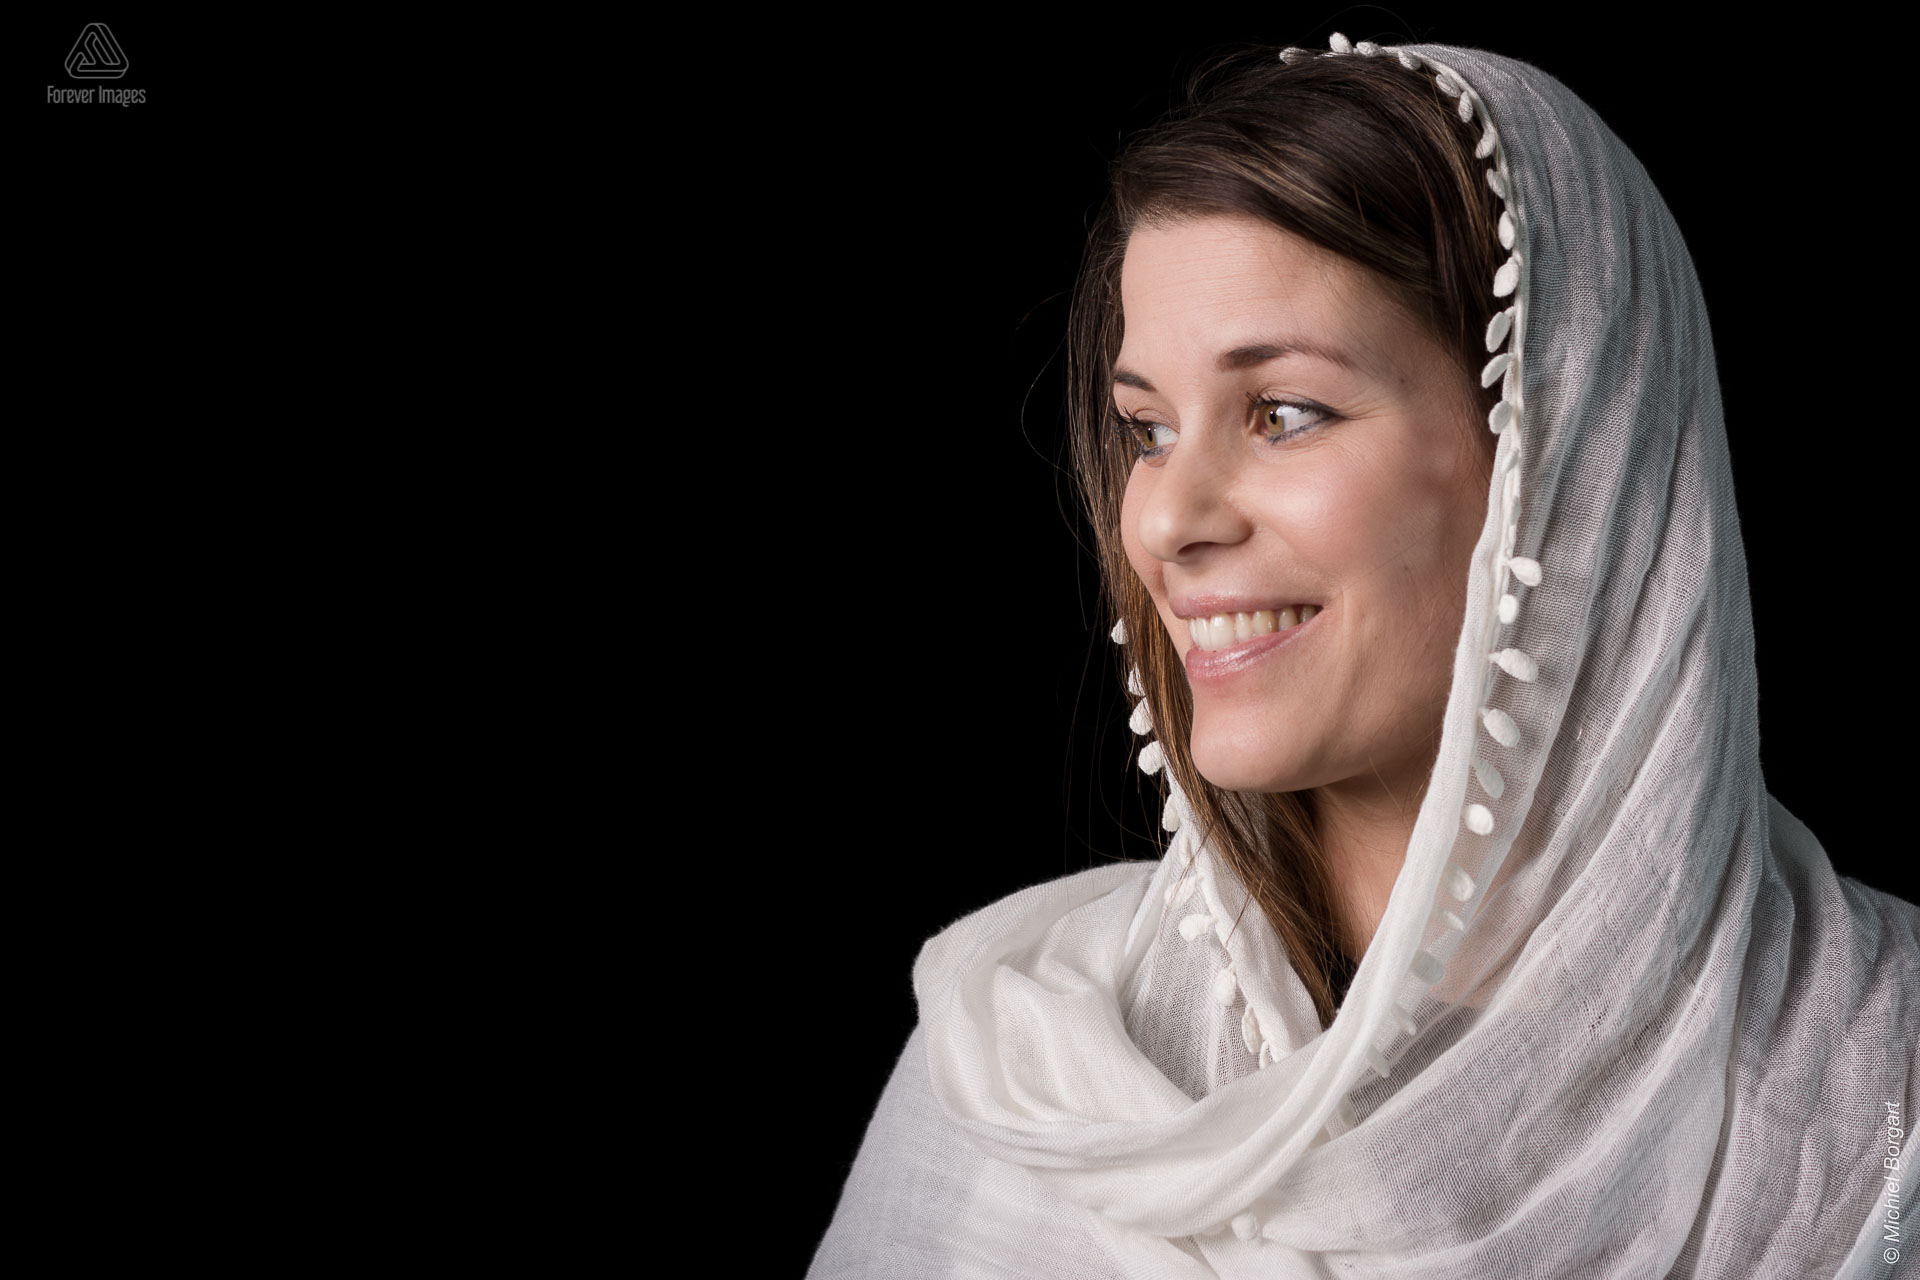 Portretfoto jonge dame met witte sjaal over haar hoofd | Simone t Hooft-Creutzburg | Portretfotograaf Michiel Borgart - Forever Images.